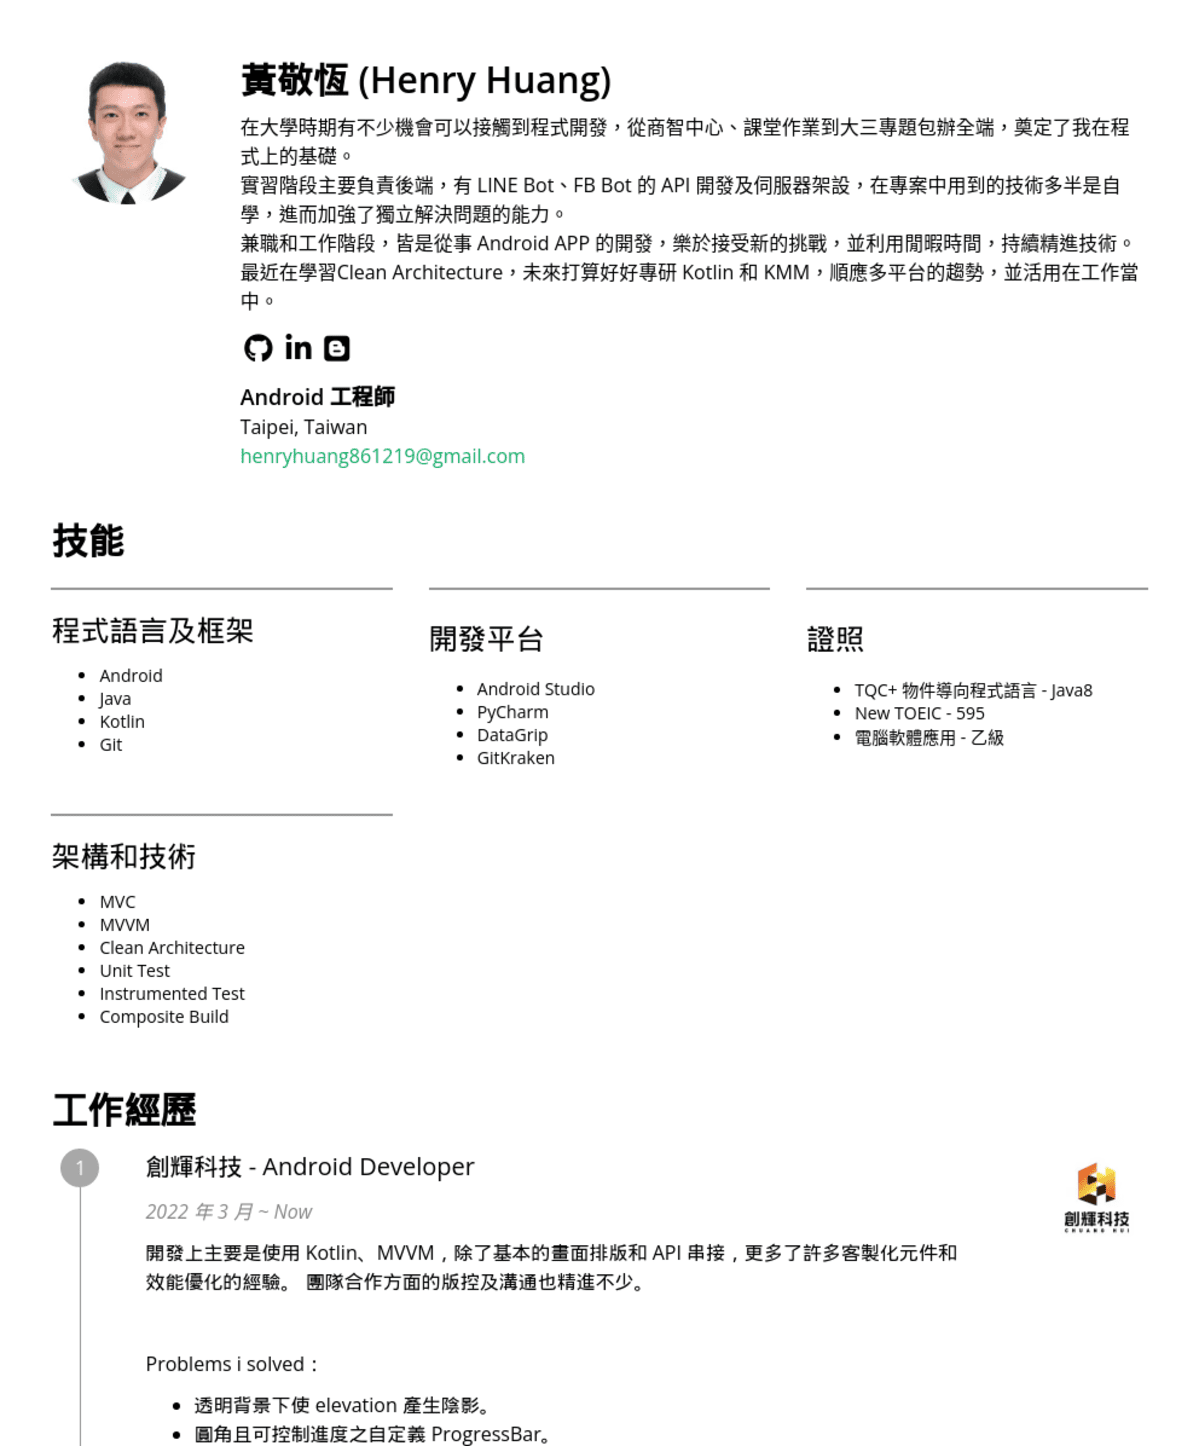 黃敬恆, Android 工程師@創輝科技有限公司